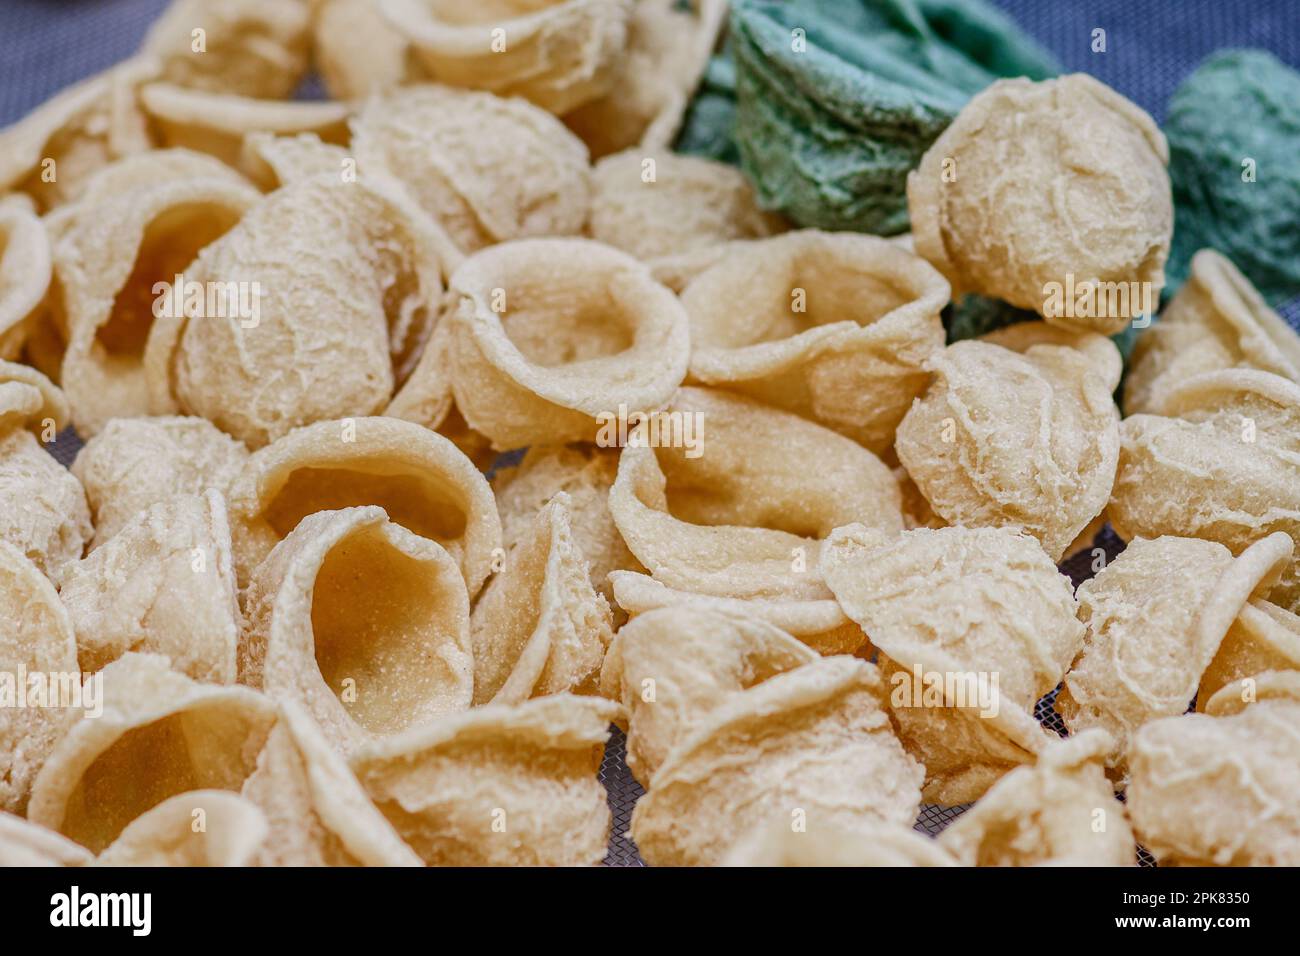 Frische Orekchiette oder Orekchietta aus Hartweizen und Wasser, handgemachte Pasta, typisch für Apulien oder Apulien, eine Region Süditaliens, aus nächster Nähe Stockfoto